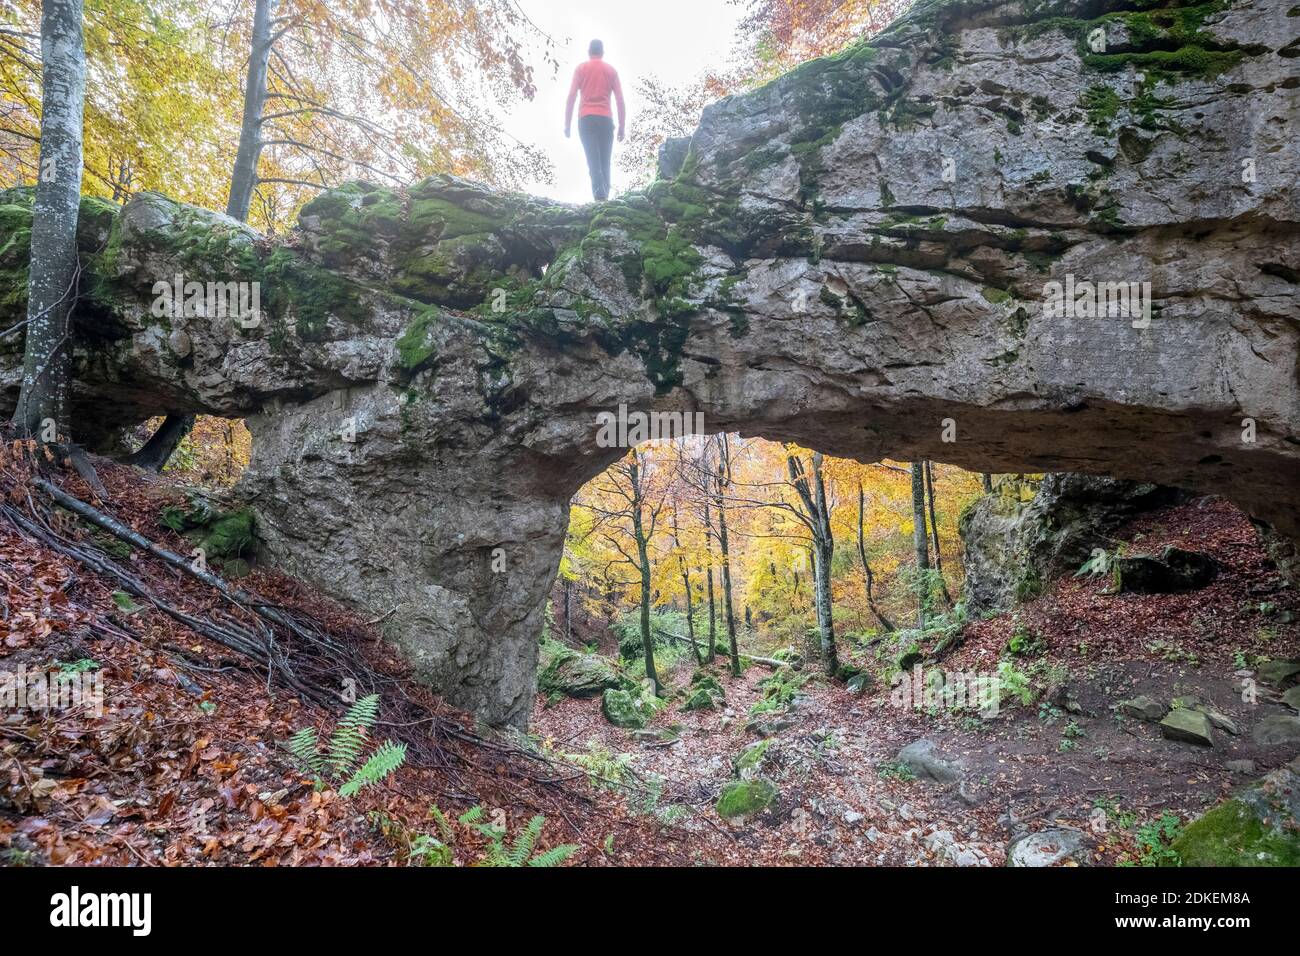 Puente de roca natural en el bosque de Val d'Arc, antigua frontera entre los municipios de Mel (hoy Borgo Valbelluna) y Miane (Treviso) establecido en 1838, lugar histórico, pre-alpes venecianos, veneto, italia Foto de stock